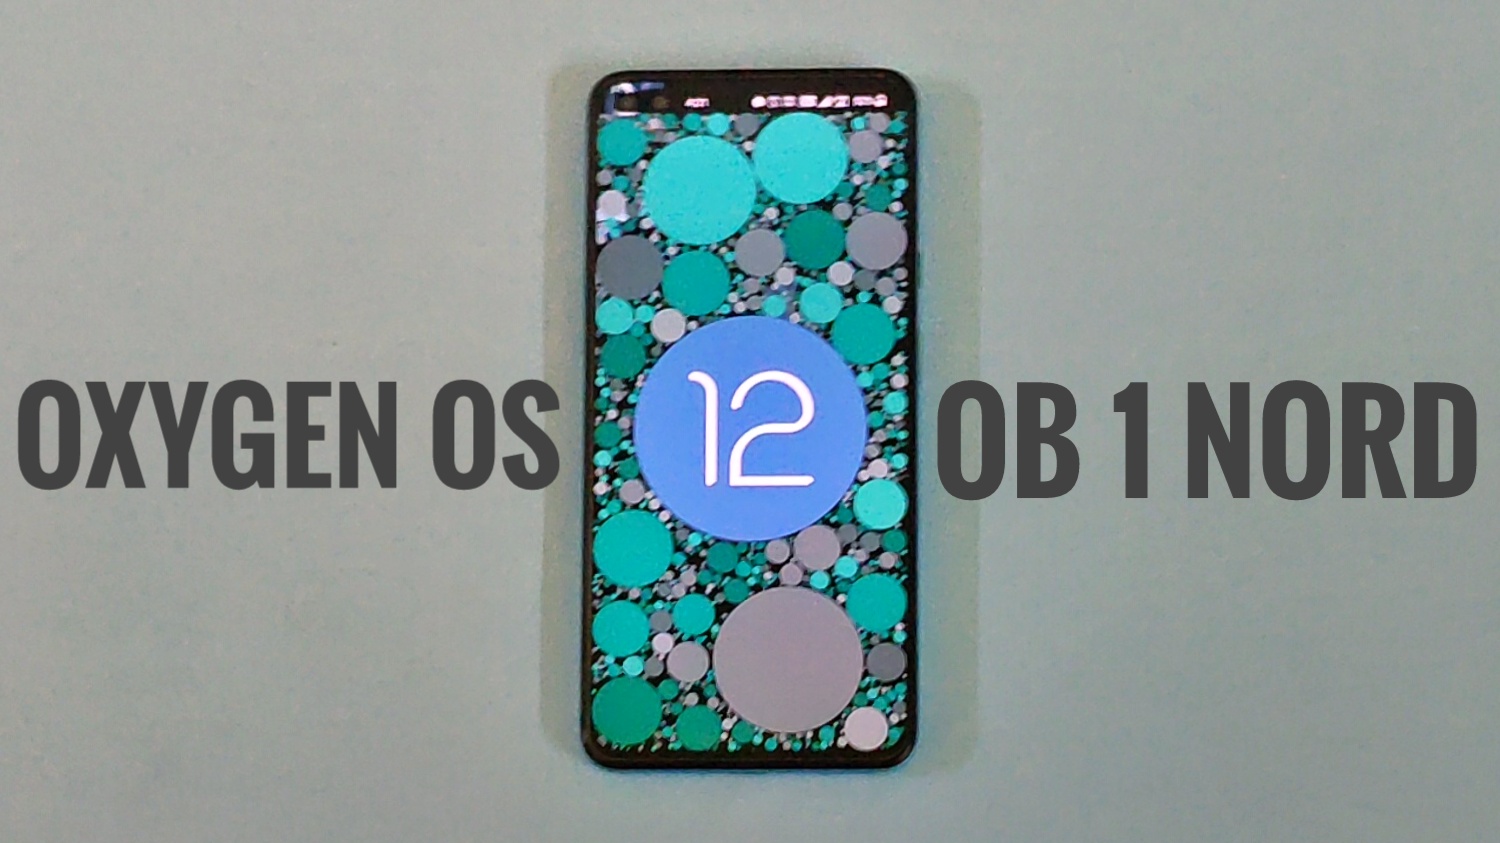 Oxygen OS 12 Open Beta 1